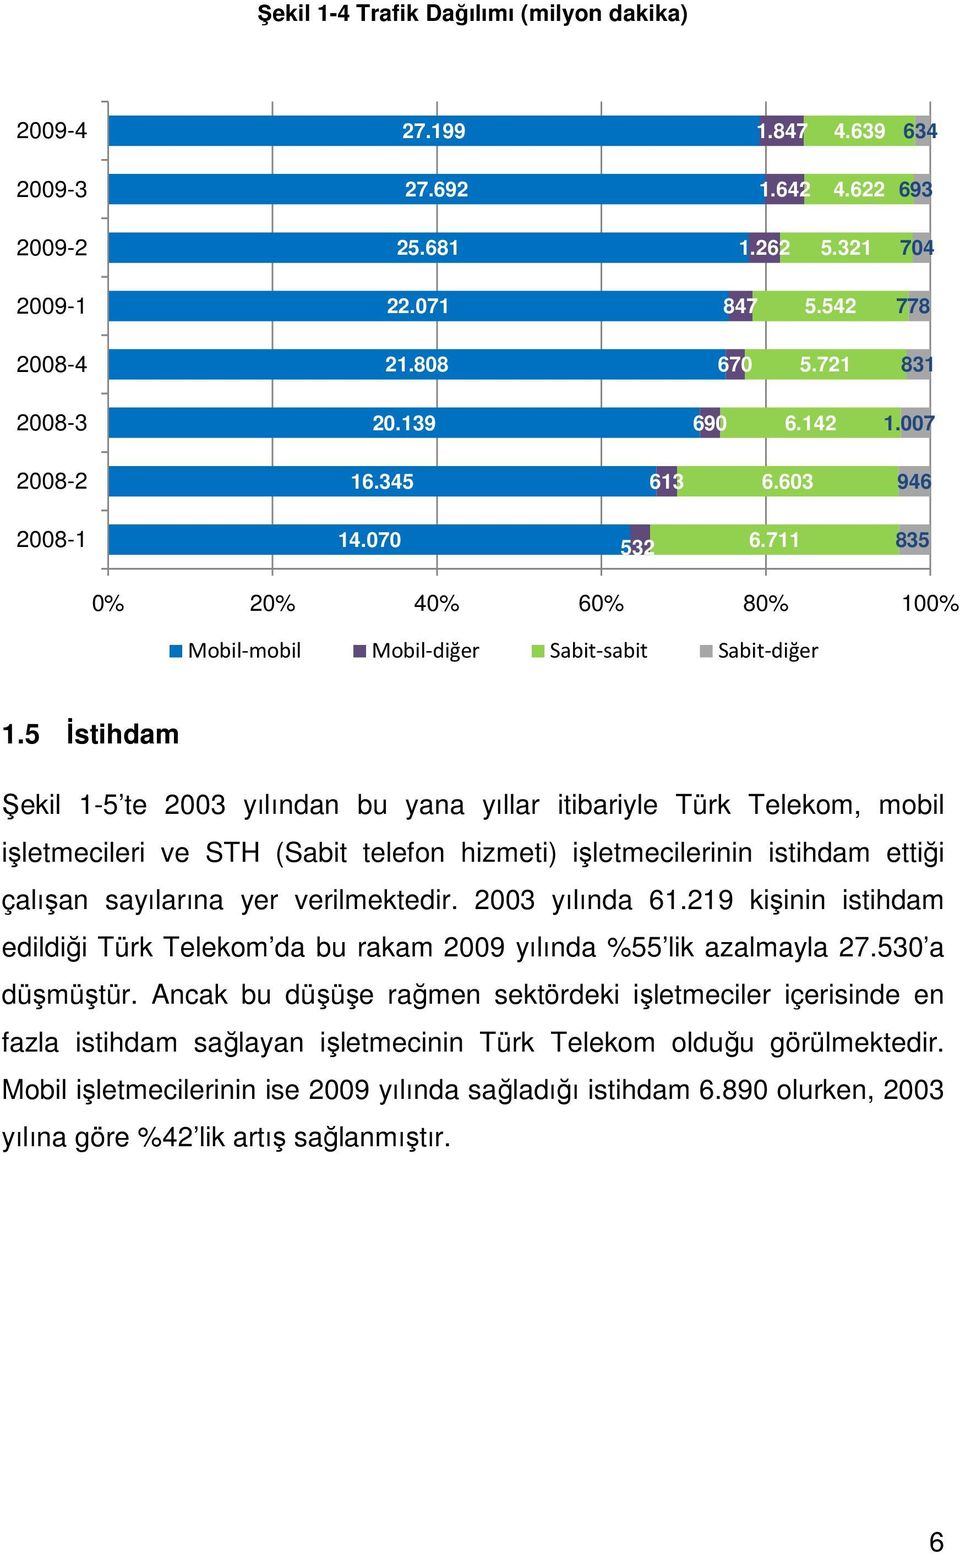 5 İstihdam Şekil 1-5 te 2003 yılından bu yana yıllar itibariyle Türk Telekom, mobil işletmecileri ve STH (Sabit telefon hizmeti) işletmecilerinin istihdam ettiği çalışan sayılarına yer verilmektedir.